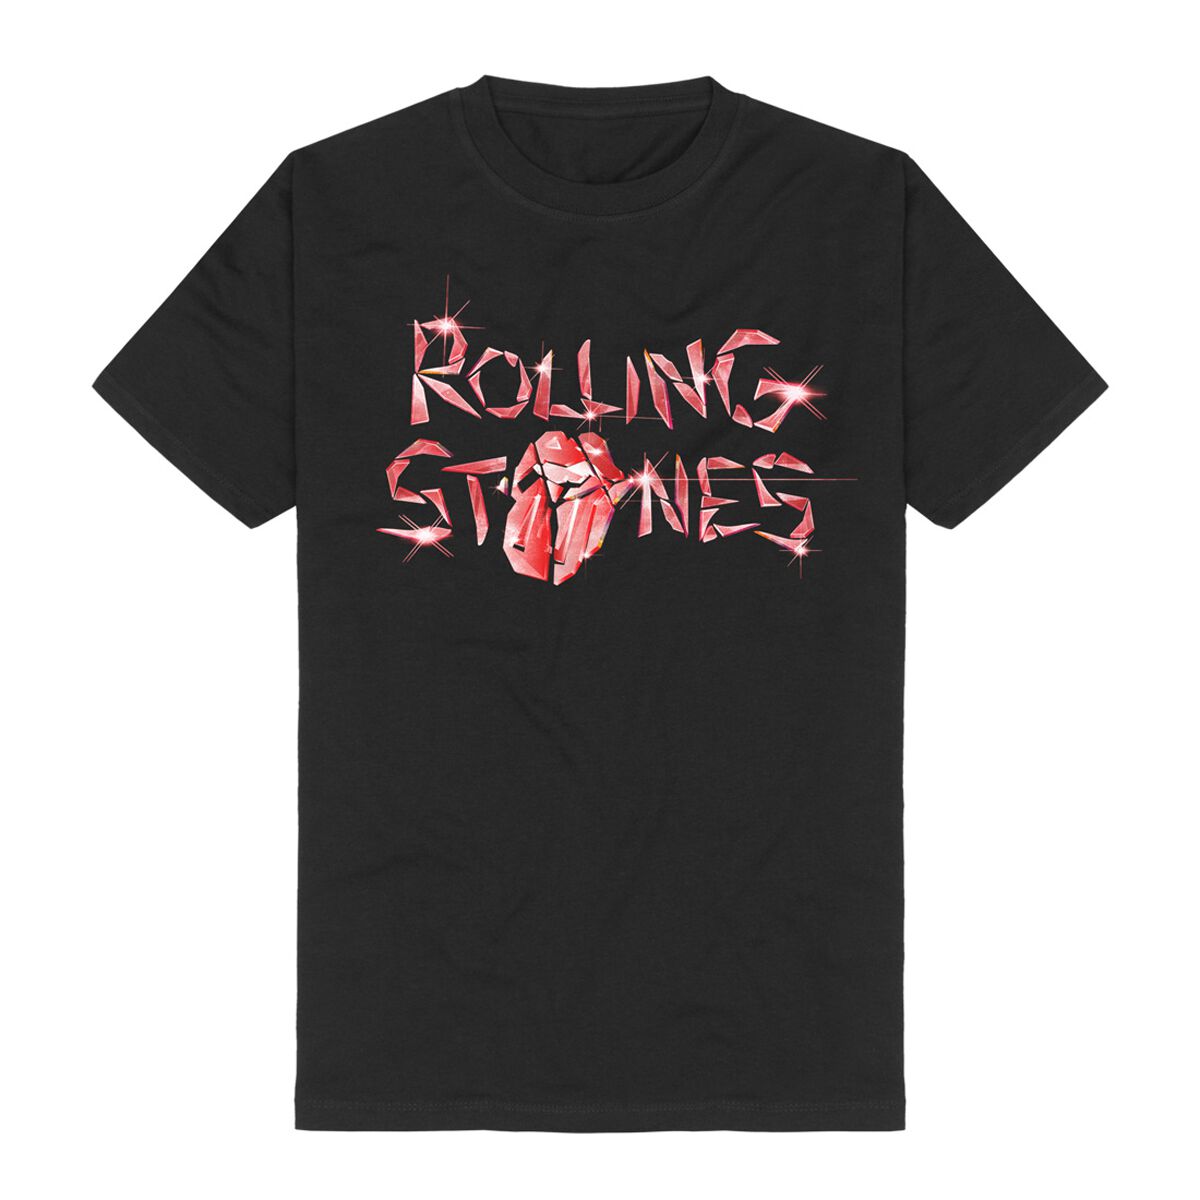 The Rolling Stones T-Shirt - Hackney Diamonds Glass Logo - S bis 5XL - für Männer - Größe S - schwarz  - Lizenziertes Merchandise!